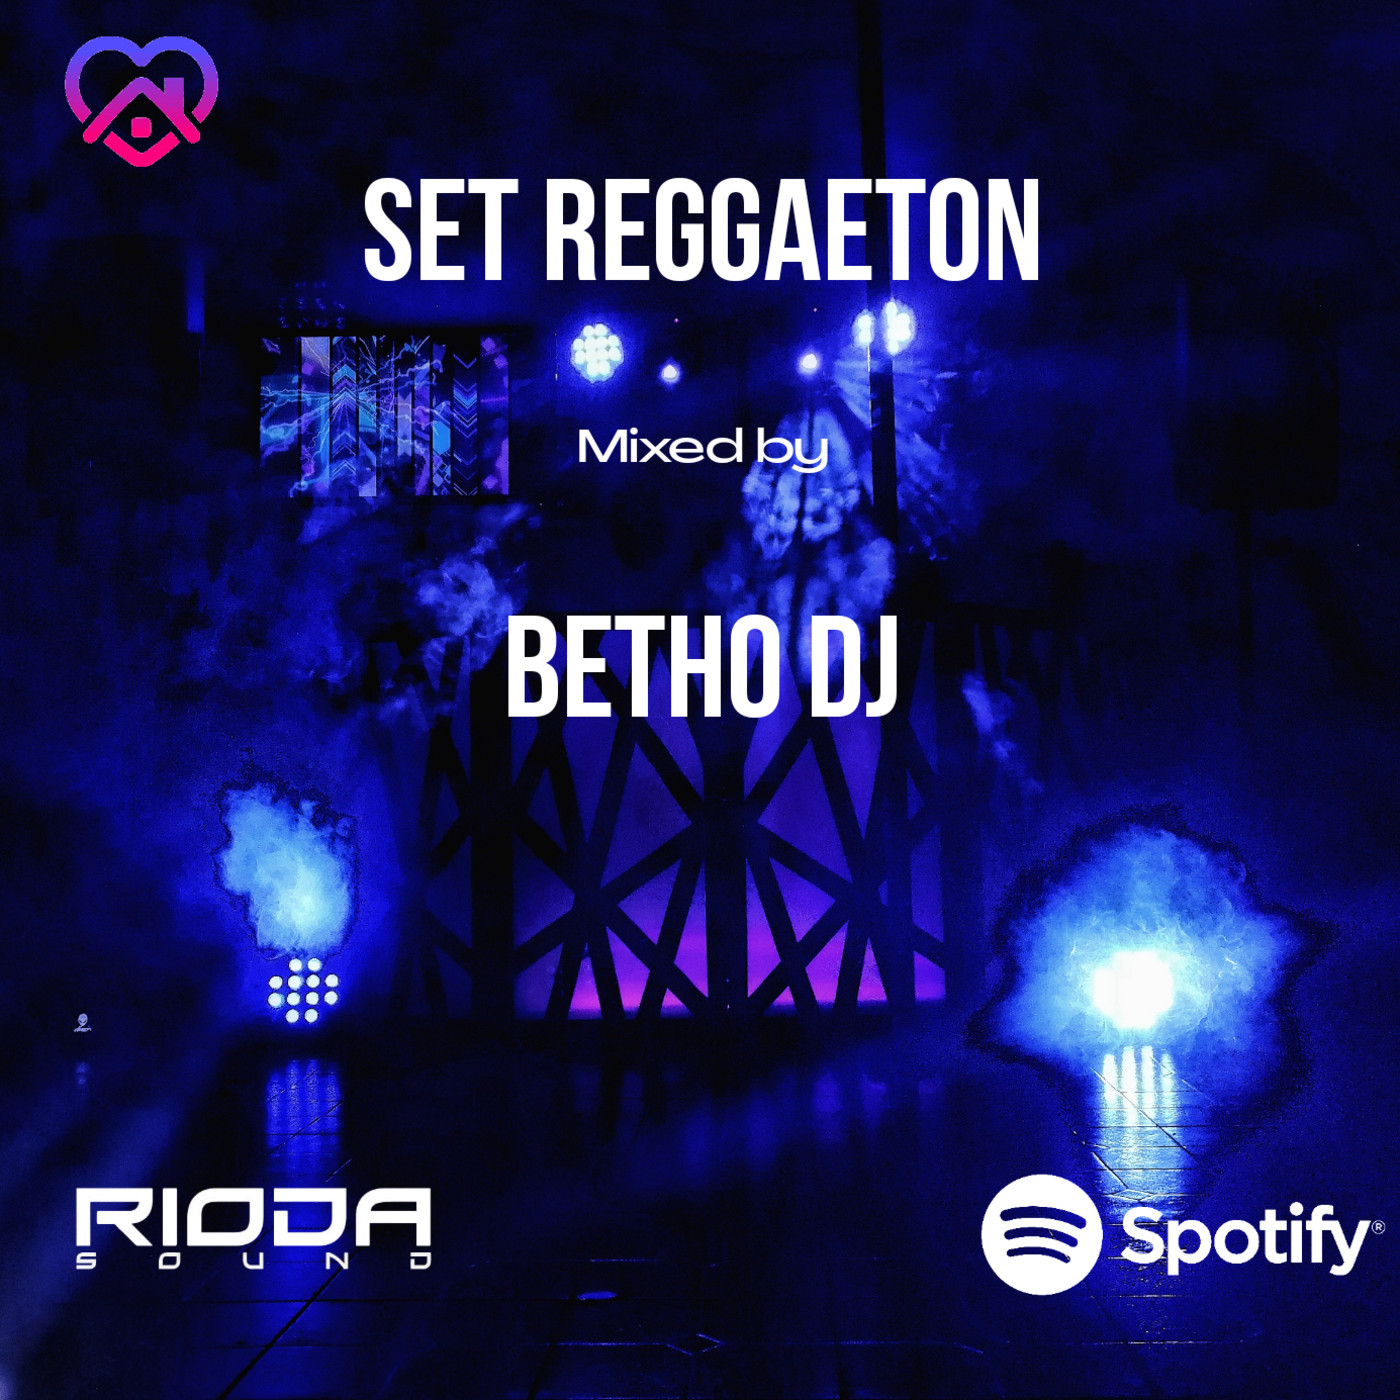 Set Reggaeton by Betho DJ